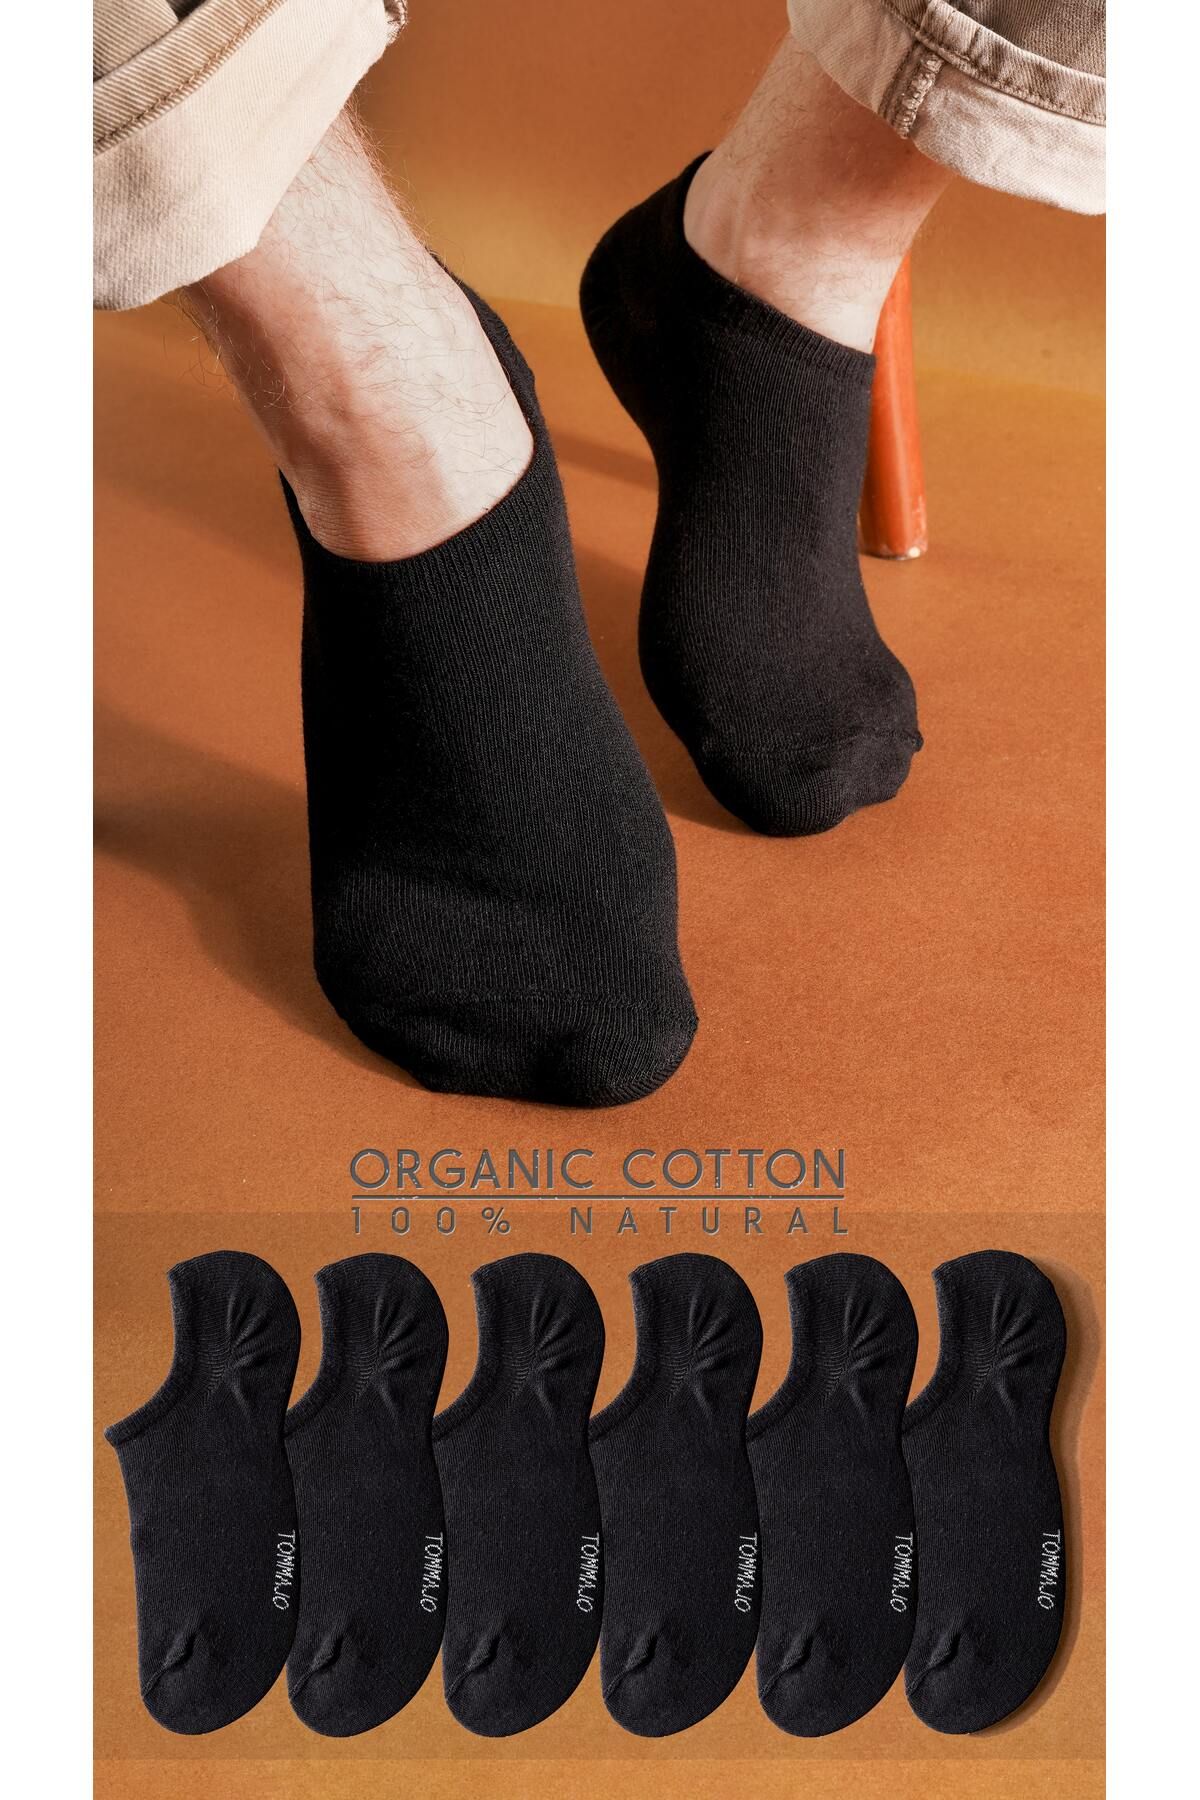 TOMMAJO 6 Çift Siyah Erkek Sneaker / Spor Ayakkabıdan Görünmez Kısa Patik Çorap / Yaz Koleksiyonu